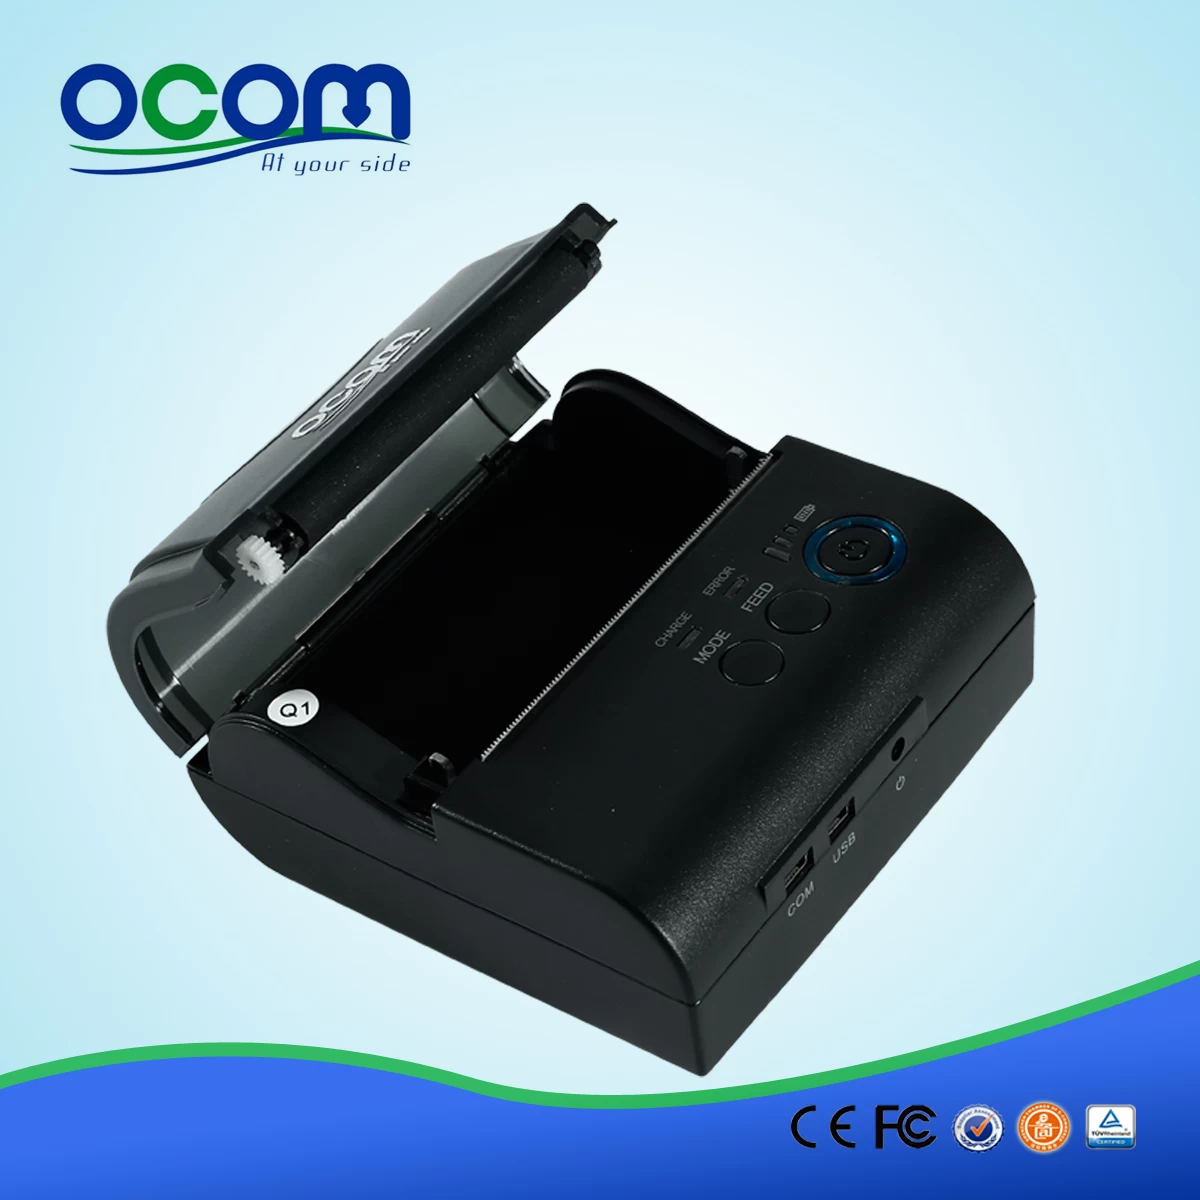 OCPP-M083 80mm papier smartphone bluetooth mini imprimante